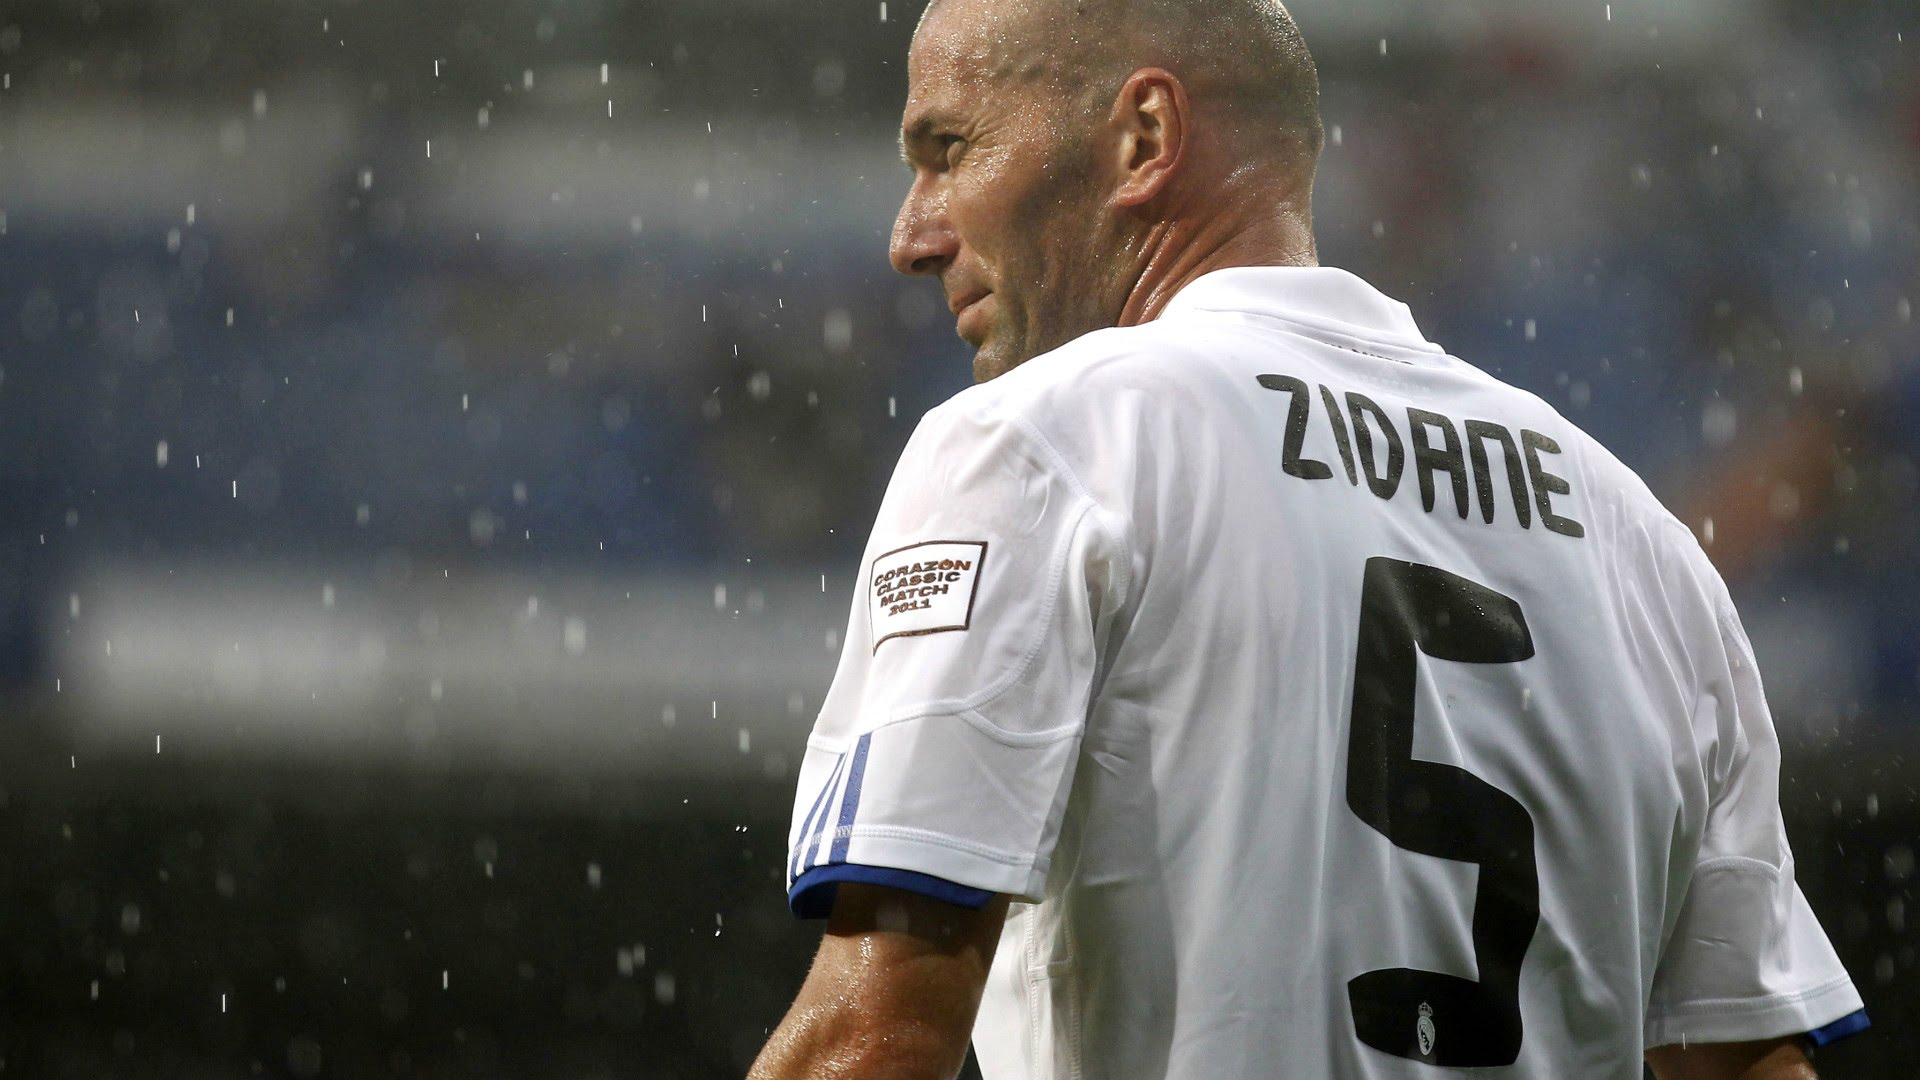 Zinedine Zidane HD Wallpaper New Image